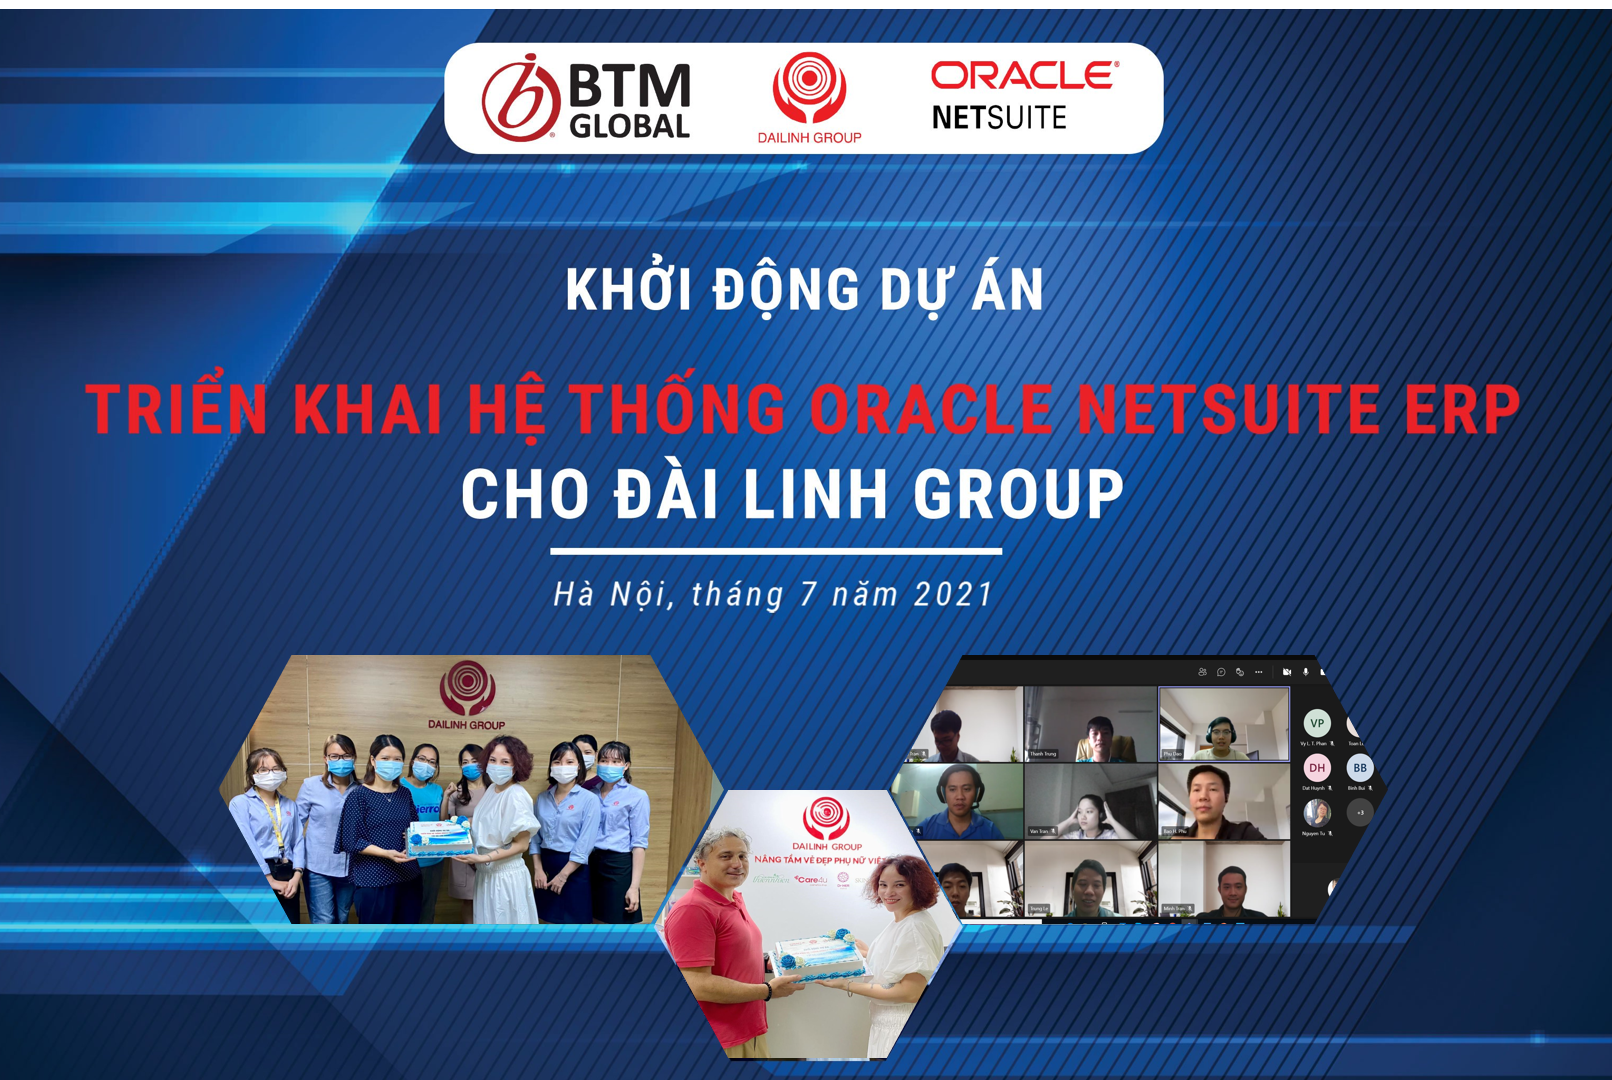 Các thành viên dự án bên Đài Linh Group, Oracle NetSuite và BTM Global Việt Nam tham gia khởi động dự án tại Hà Nội và Thành phố Hồ Chí Minh.